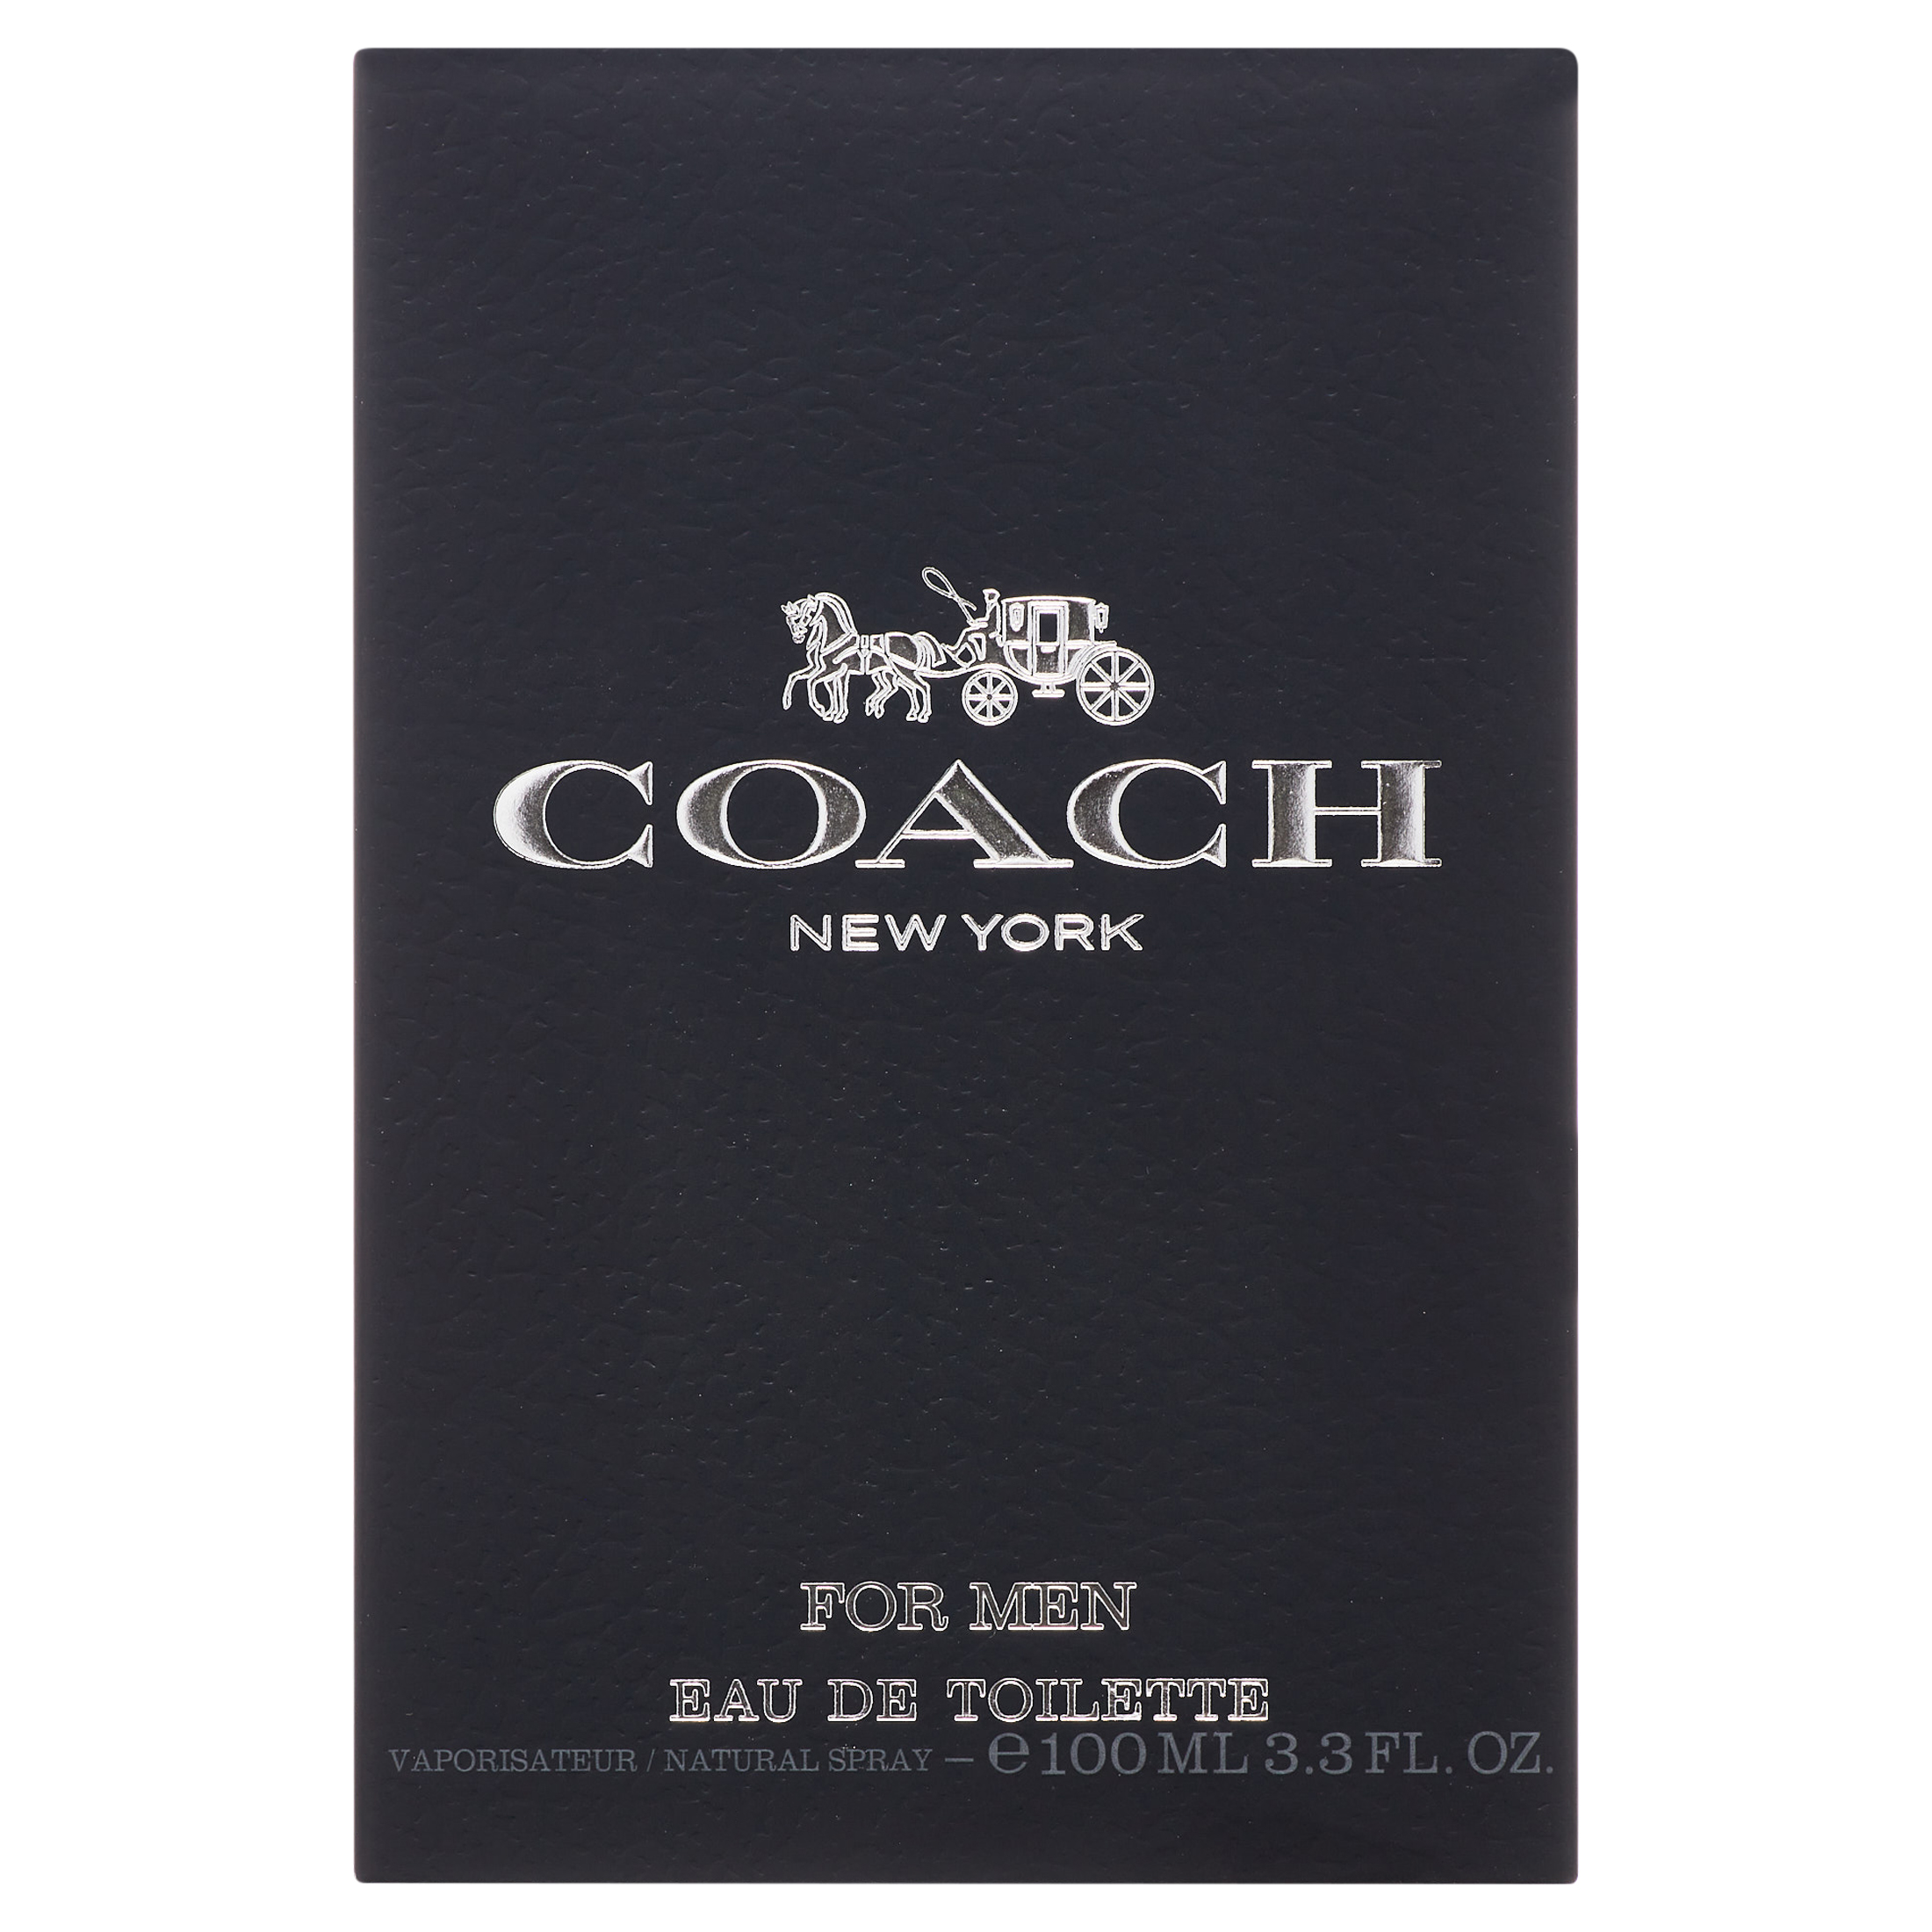 Coach New York Eau De Toilette Spray, Cologne for Men, 3.3 oz - image 3 of 5